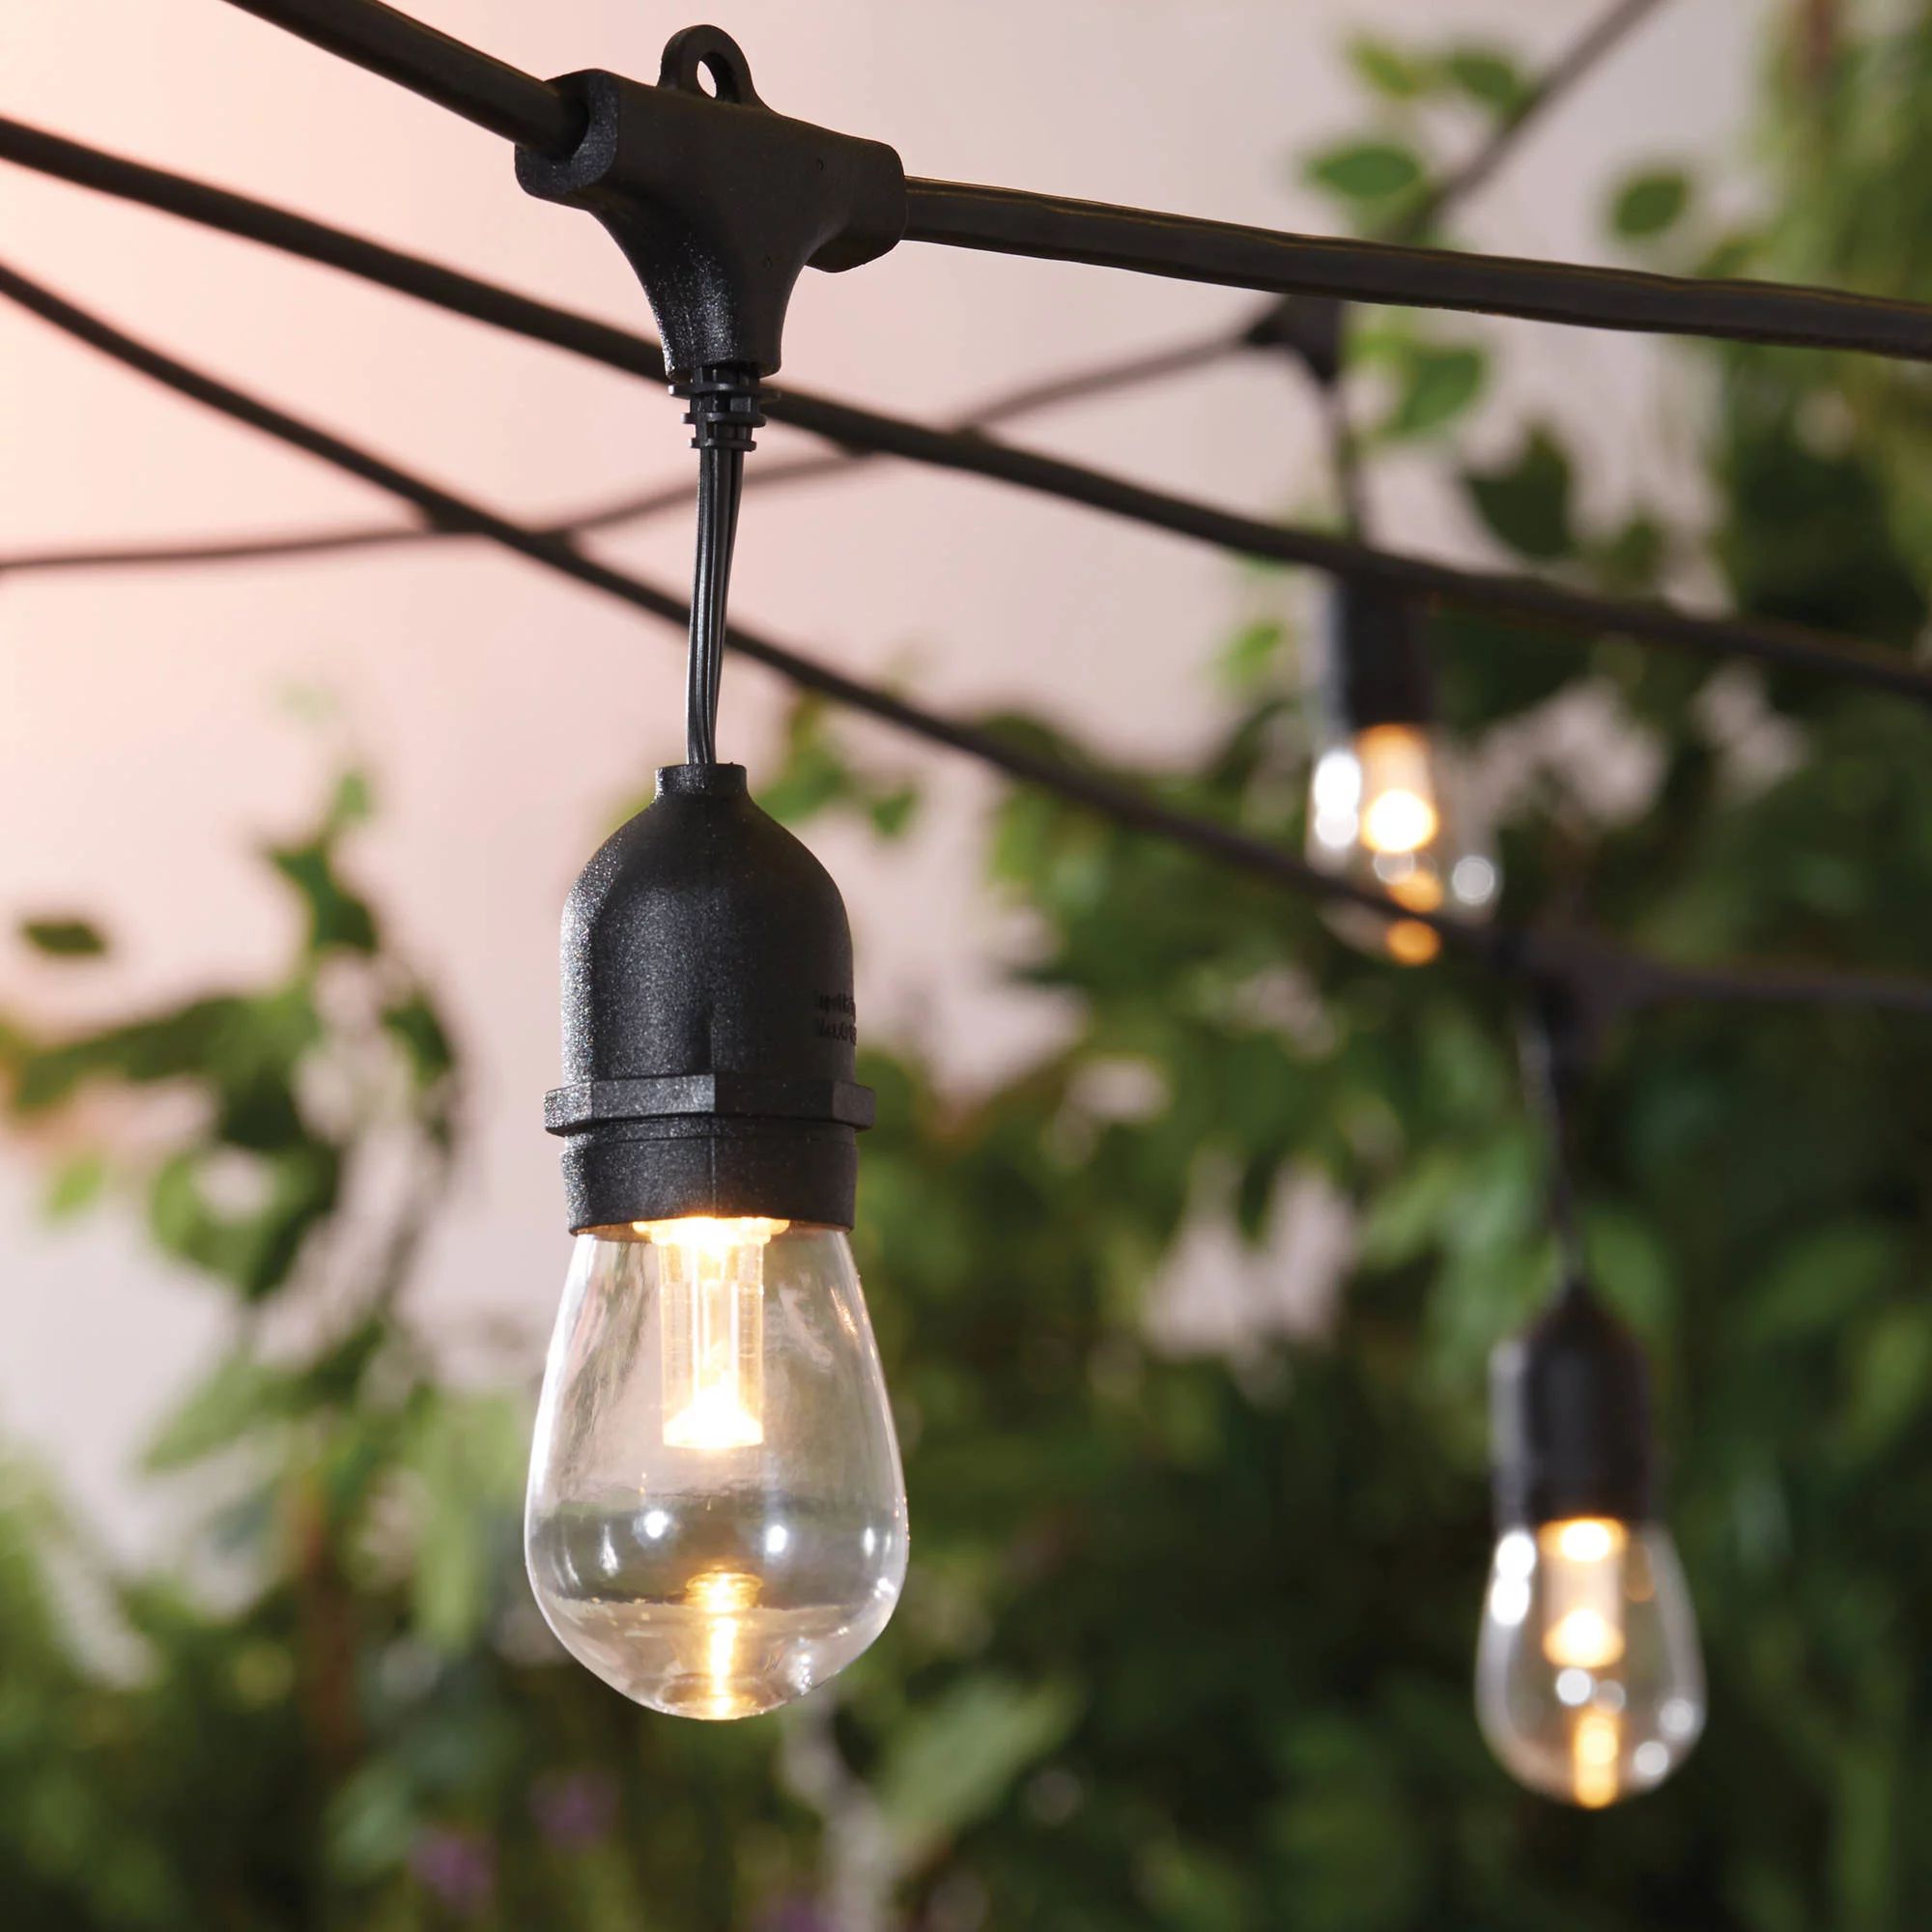 Better Homes & Gardens 22ft Outdoor LED Cafe String Lights in Black | Walmart (US)